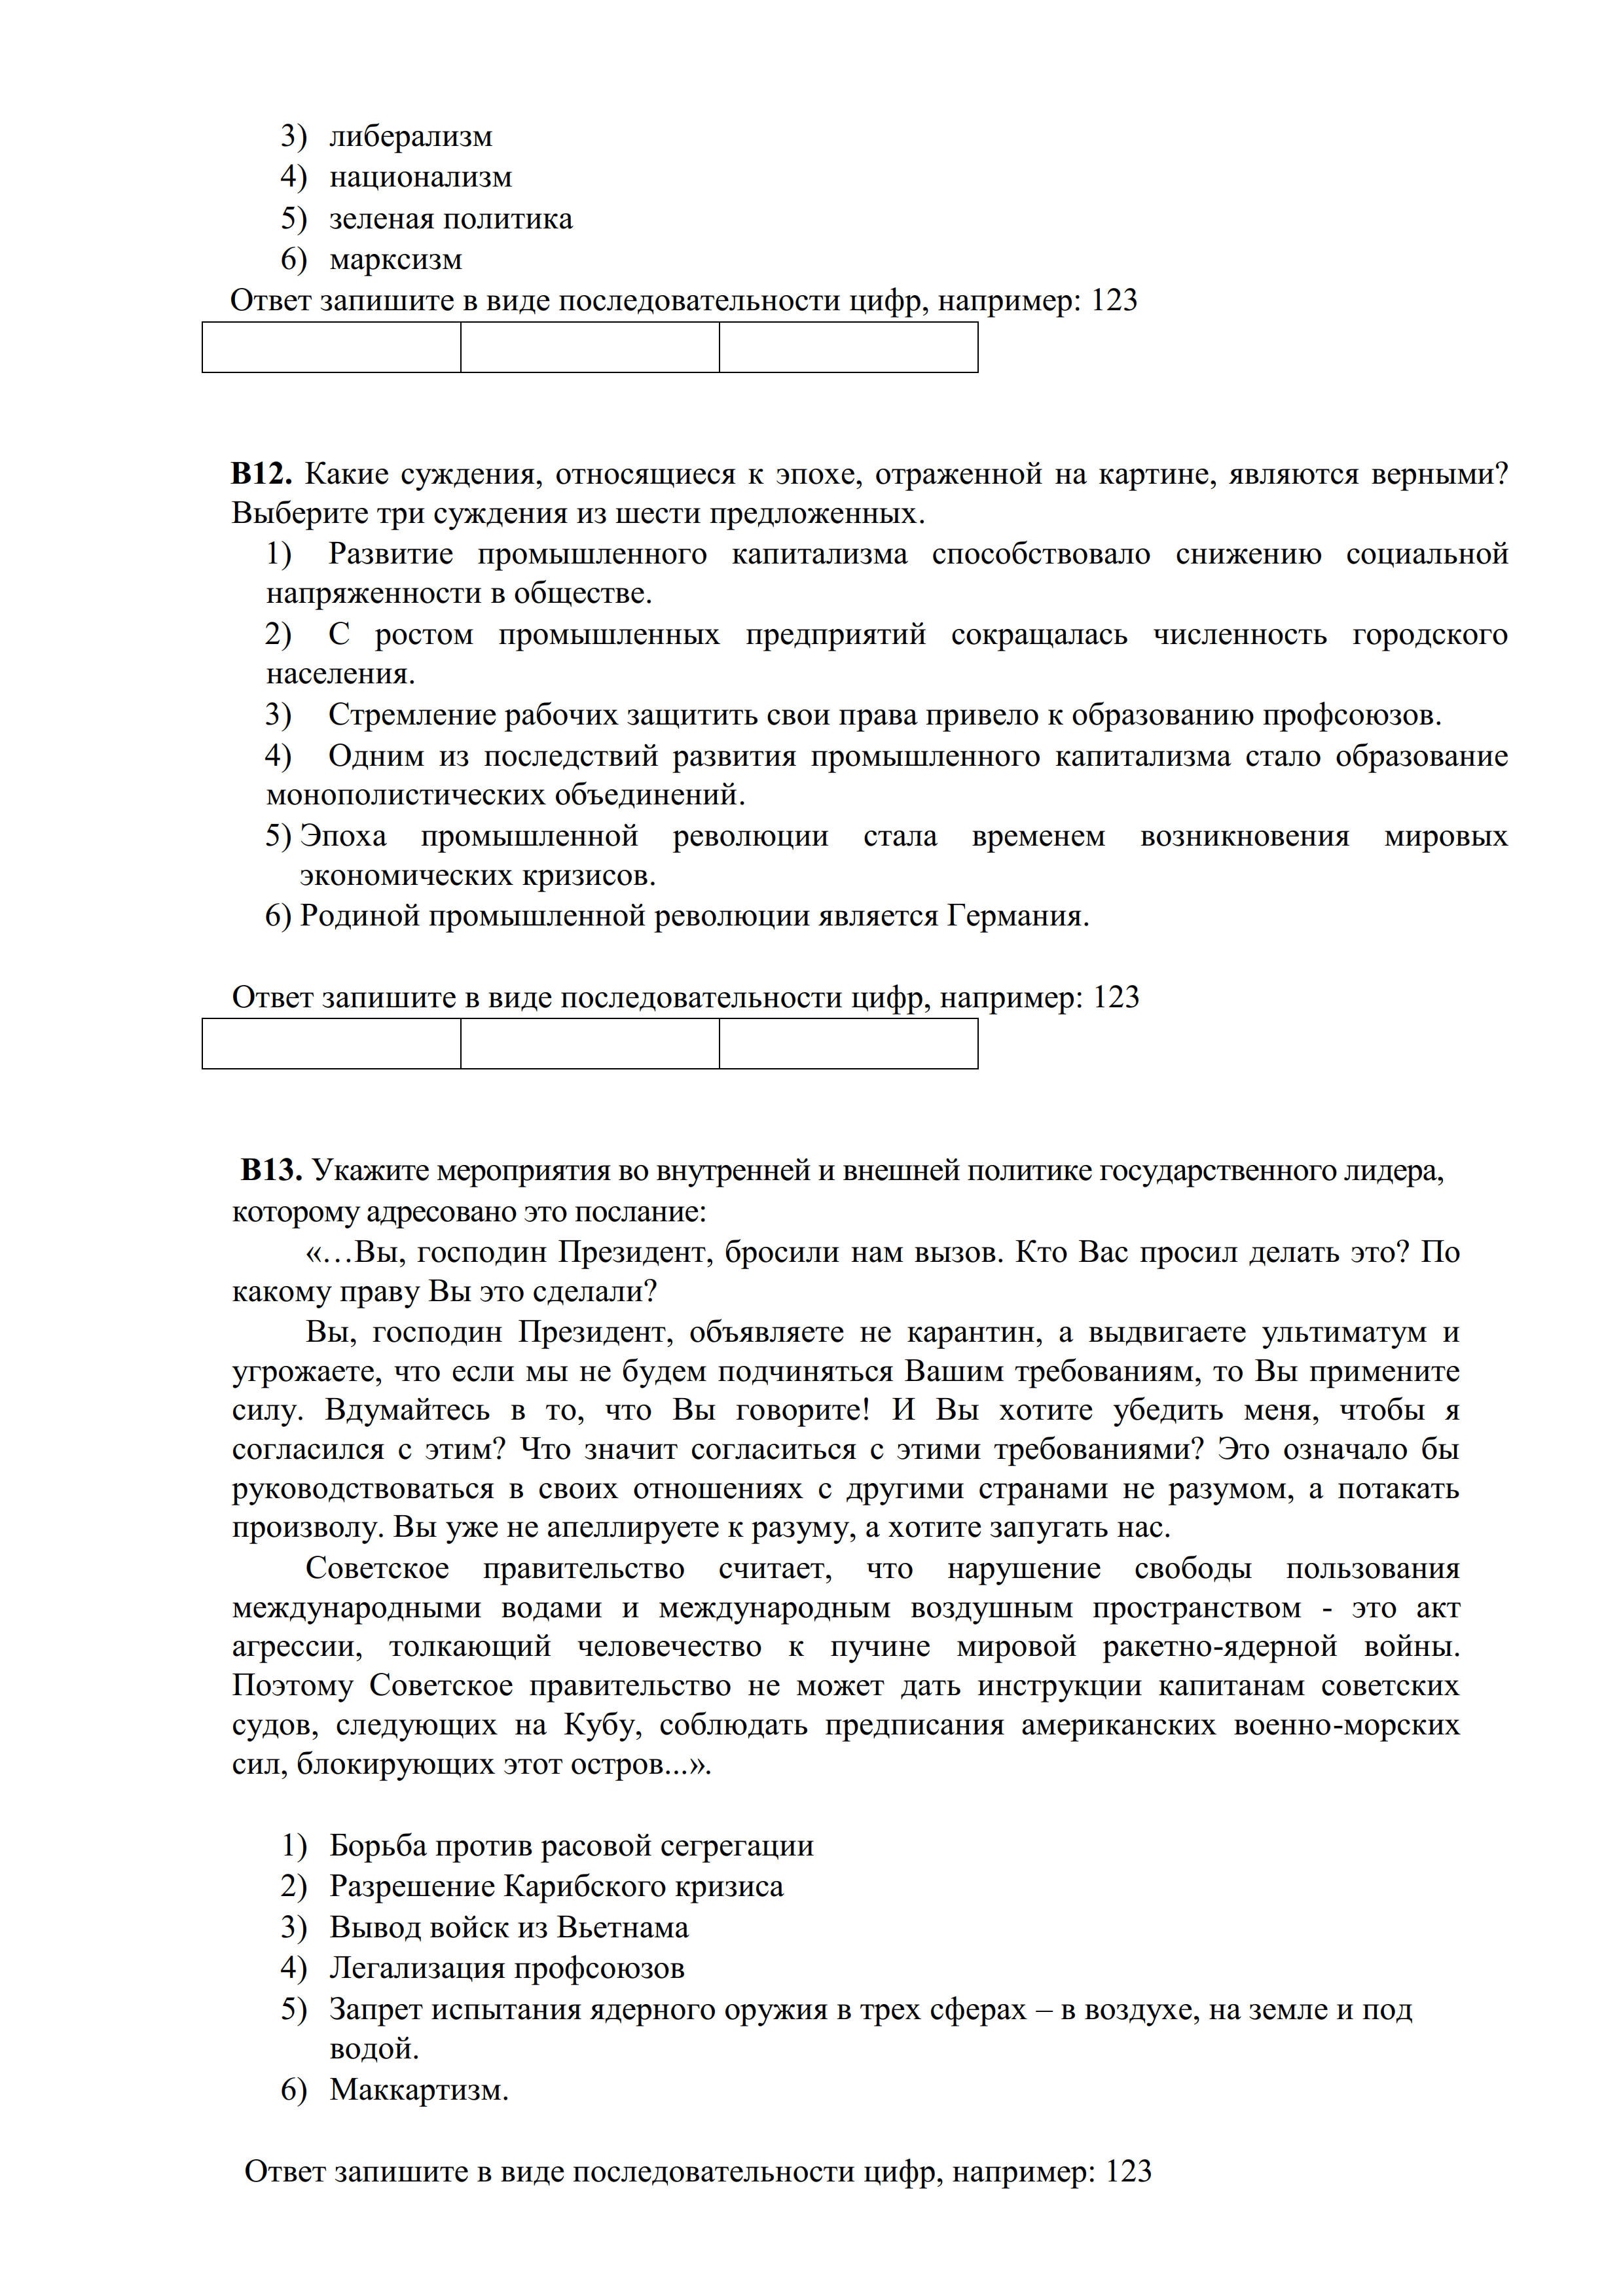 俄罗斯留学|俄罗斯大学入学考试真题|俄罗斯大学